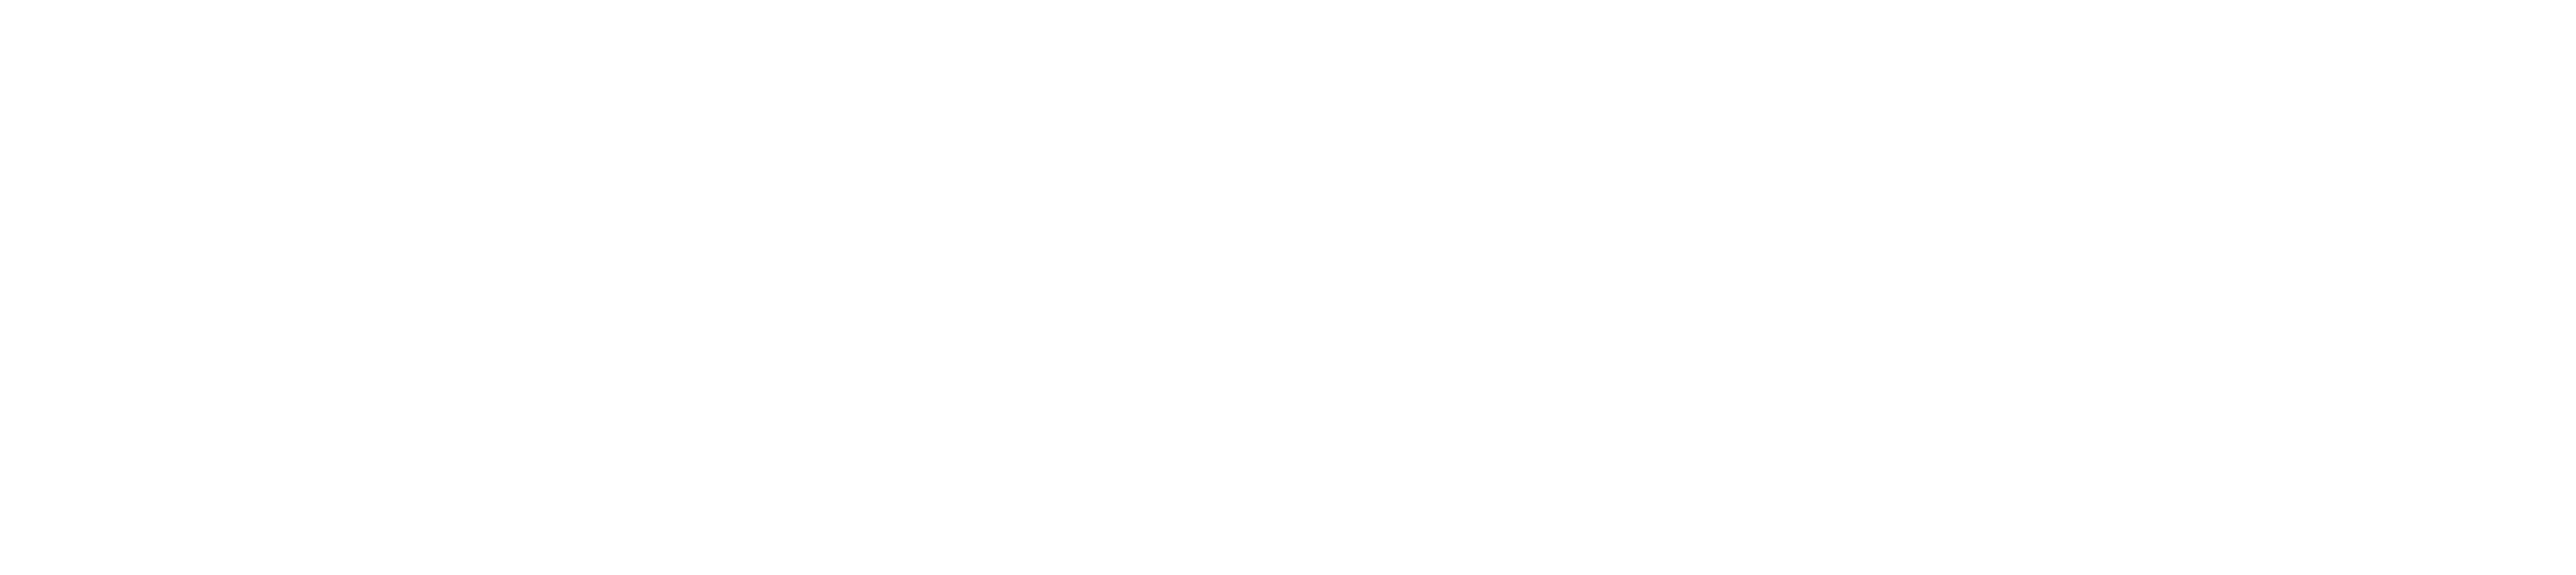 logo-EU